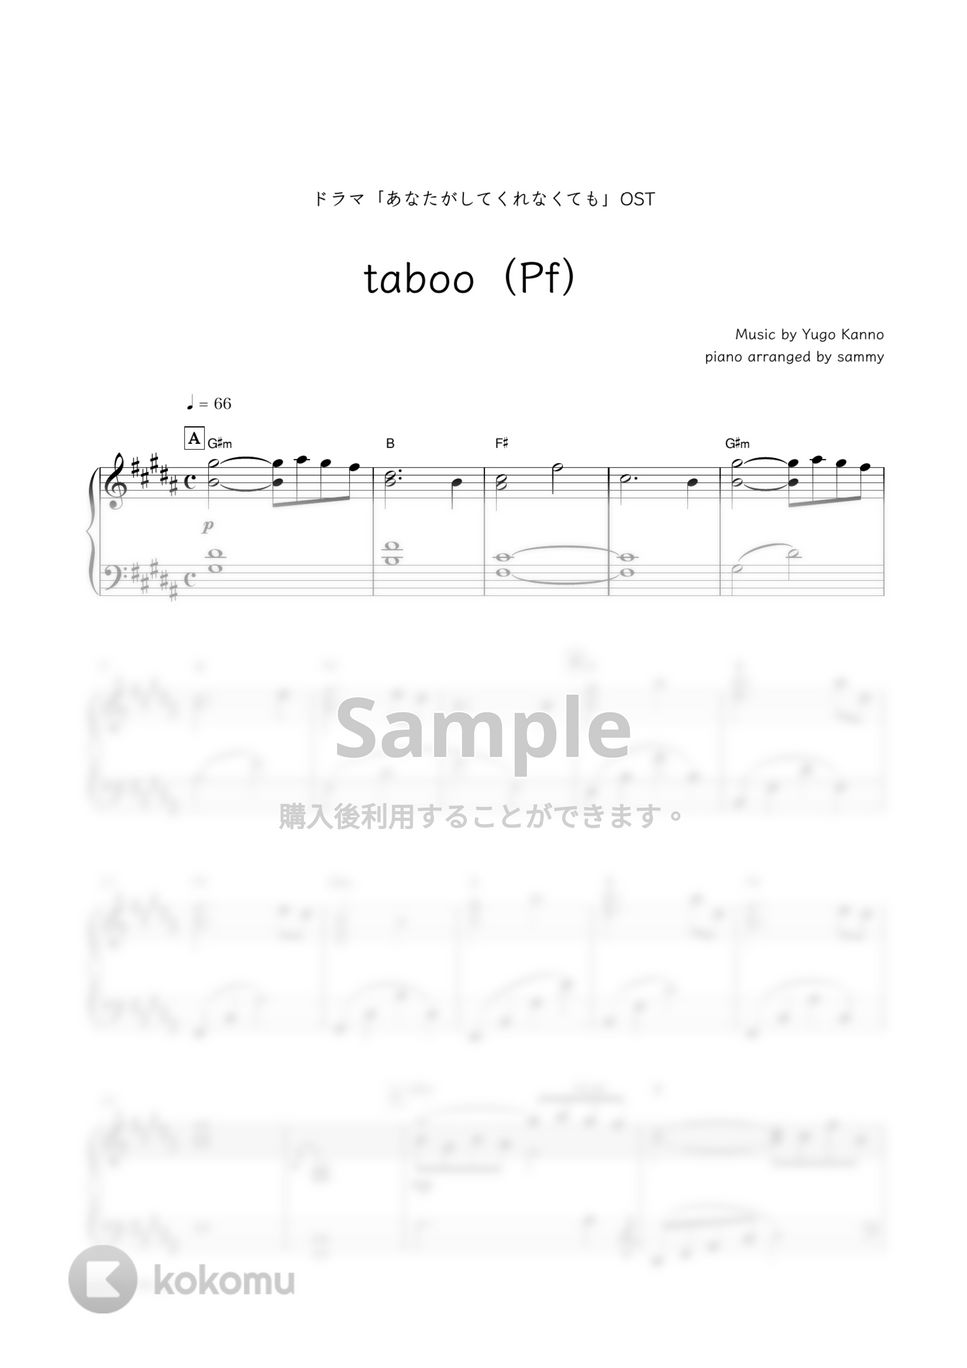 ドラマ『あなたがしてくれなくても』OST - taboo (Pf) by sammy